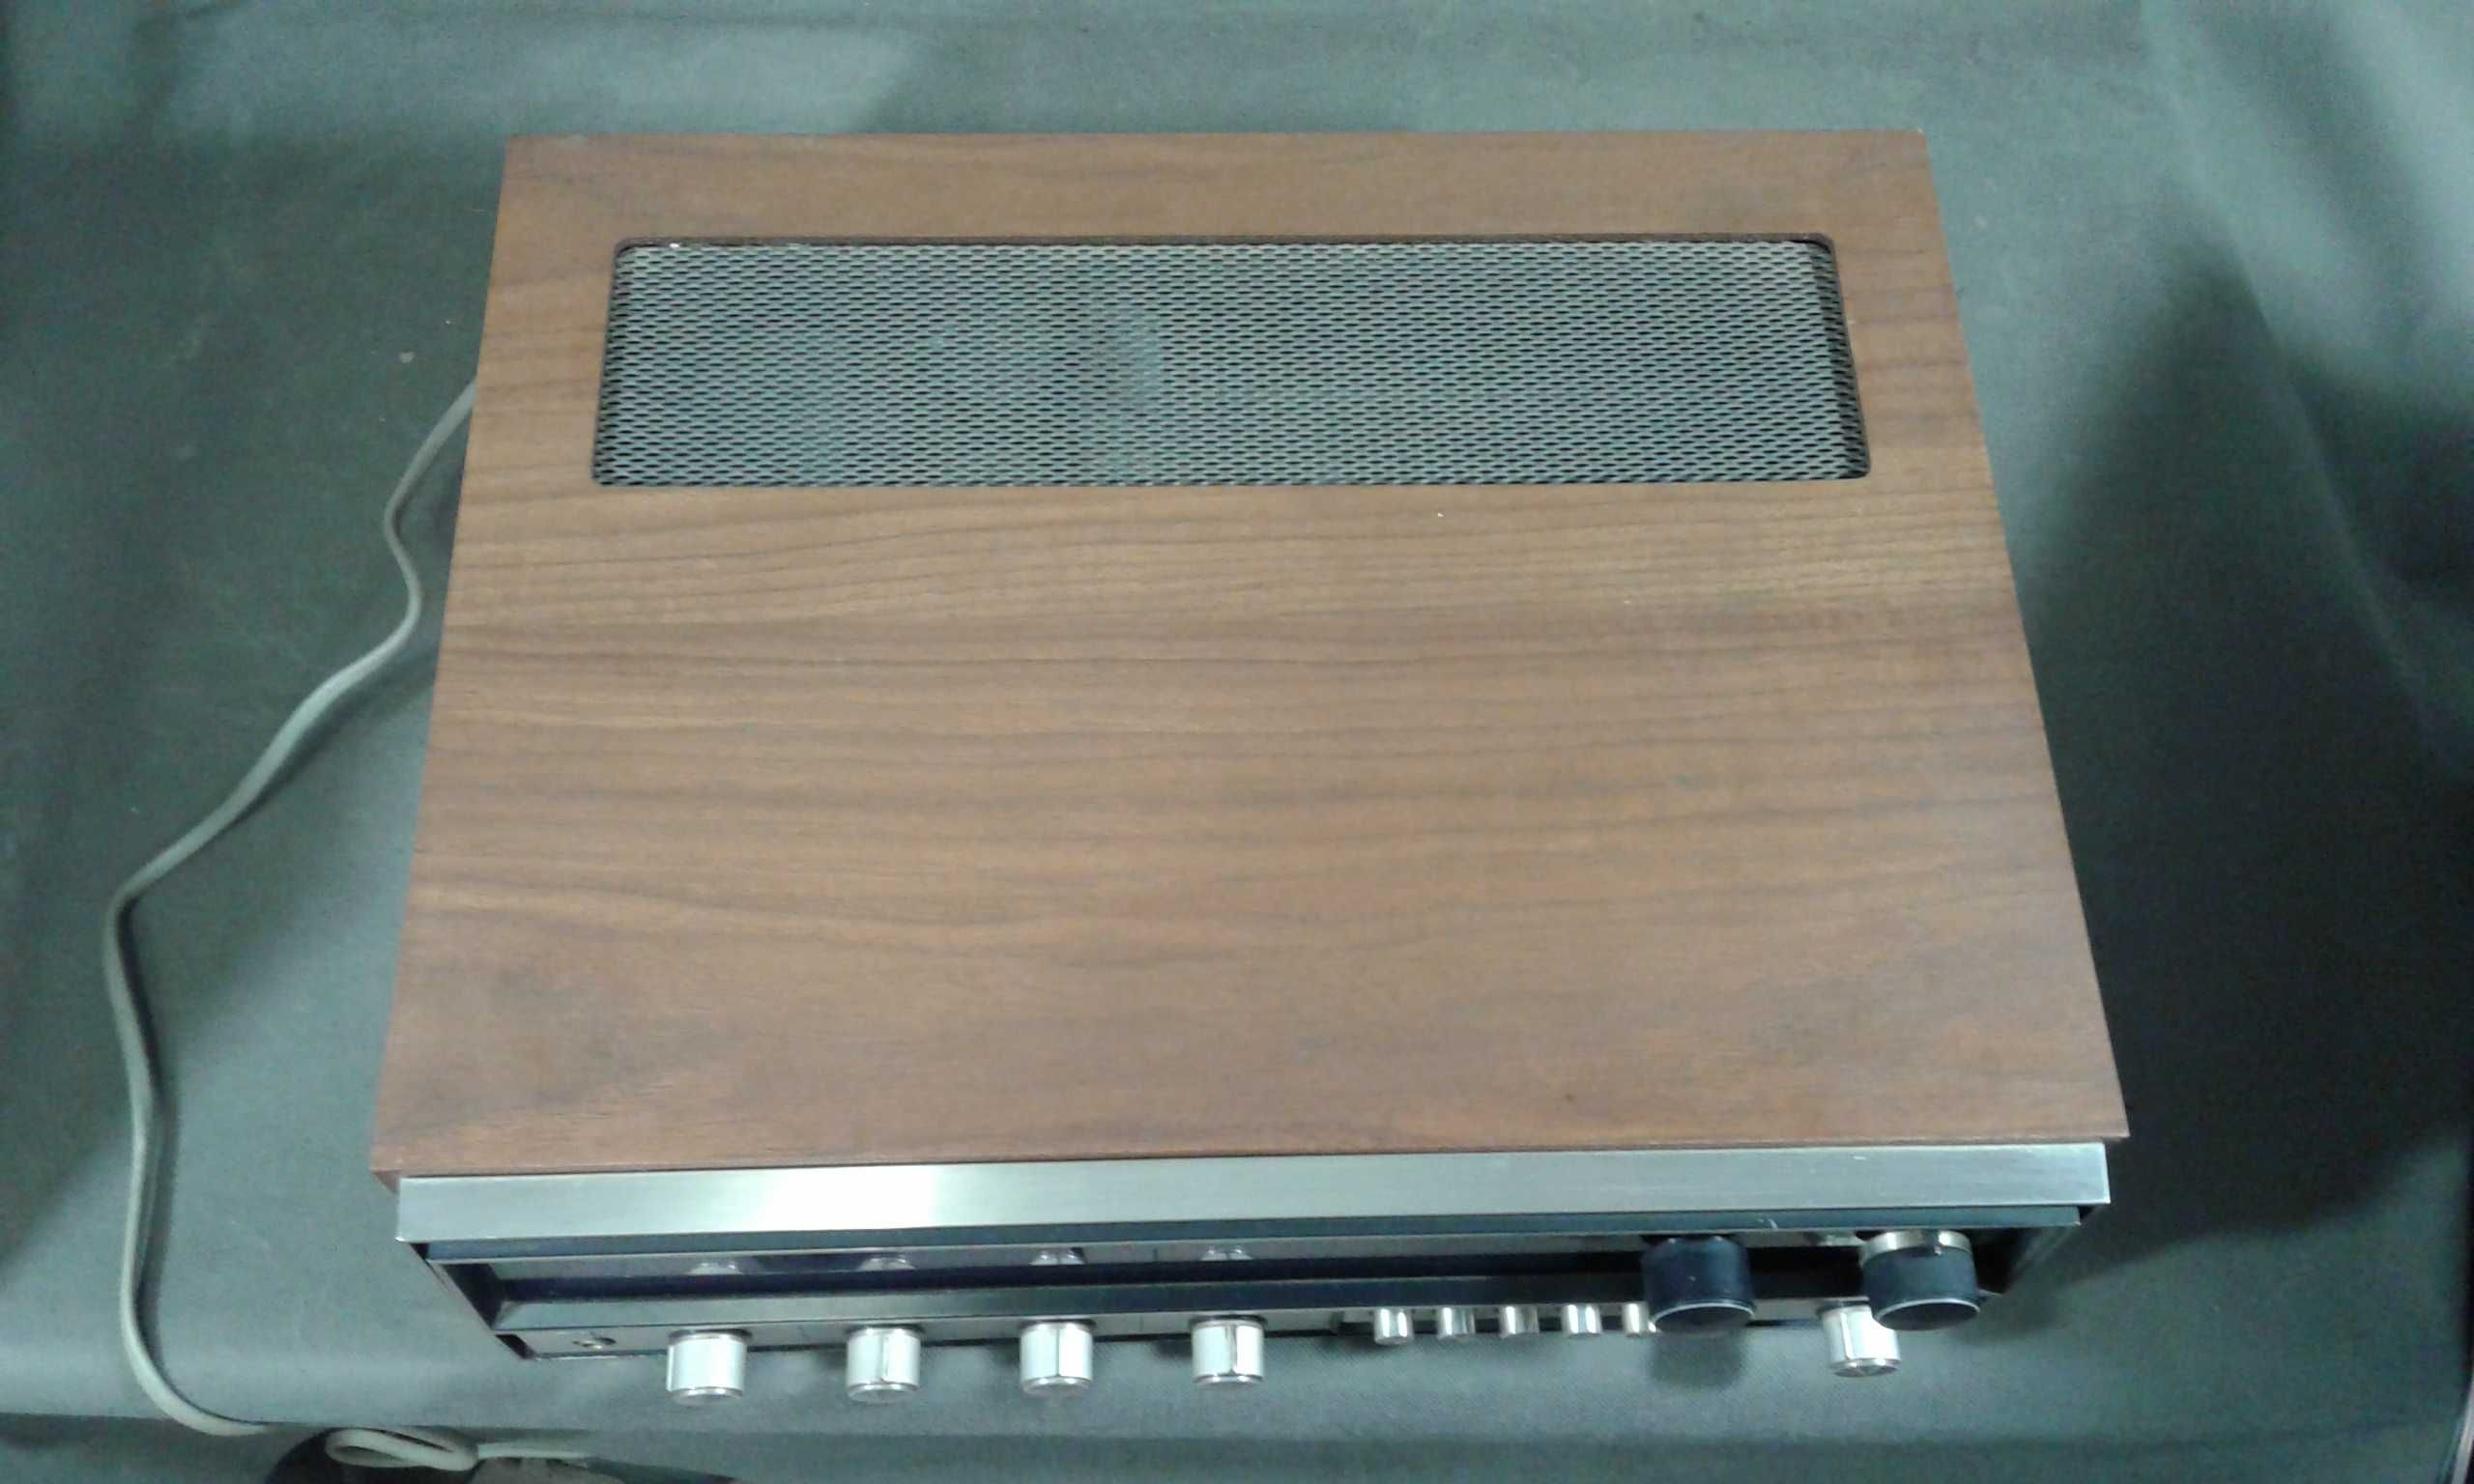 KENOOD KR-5200,amplituner stereo